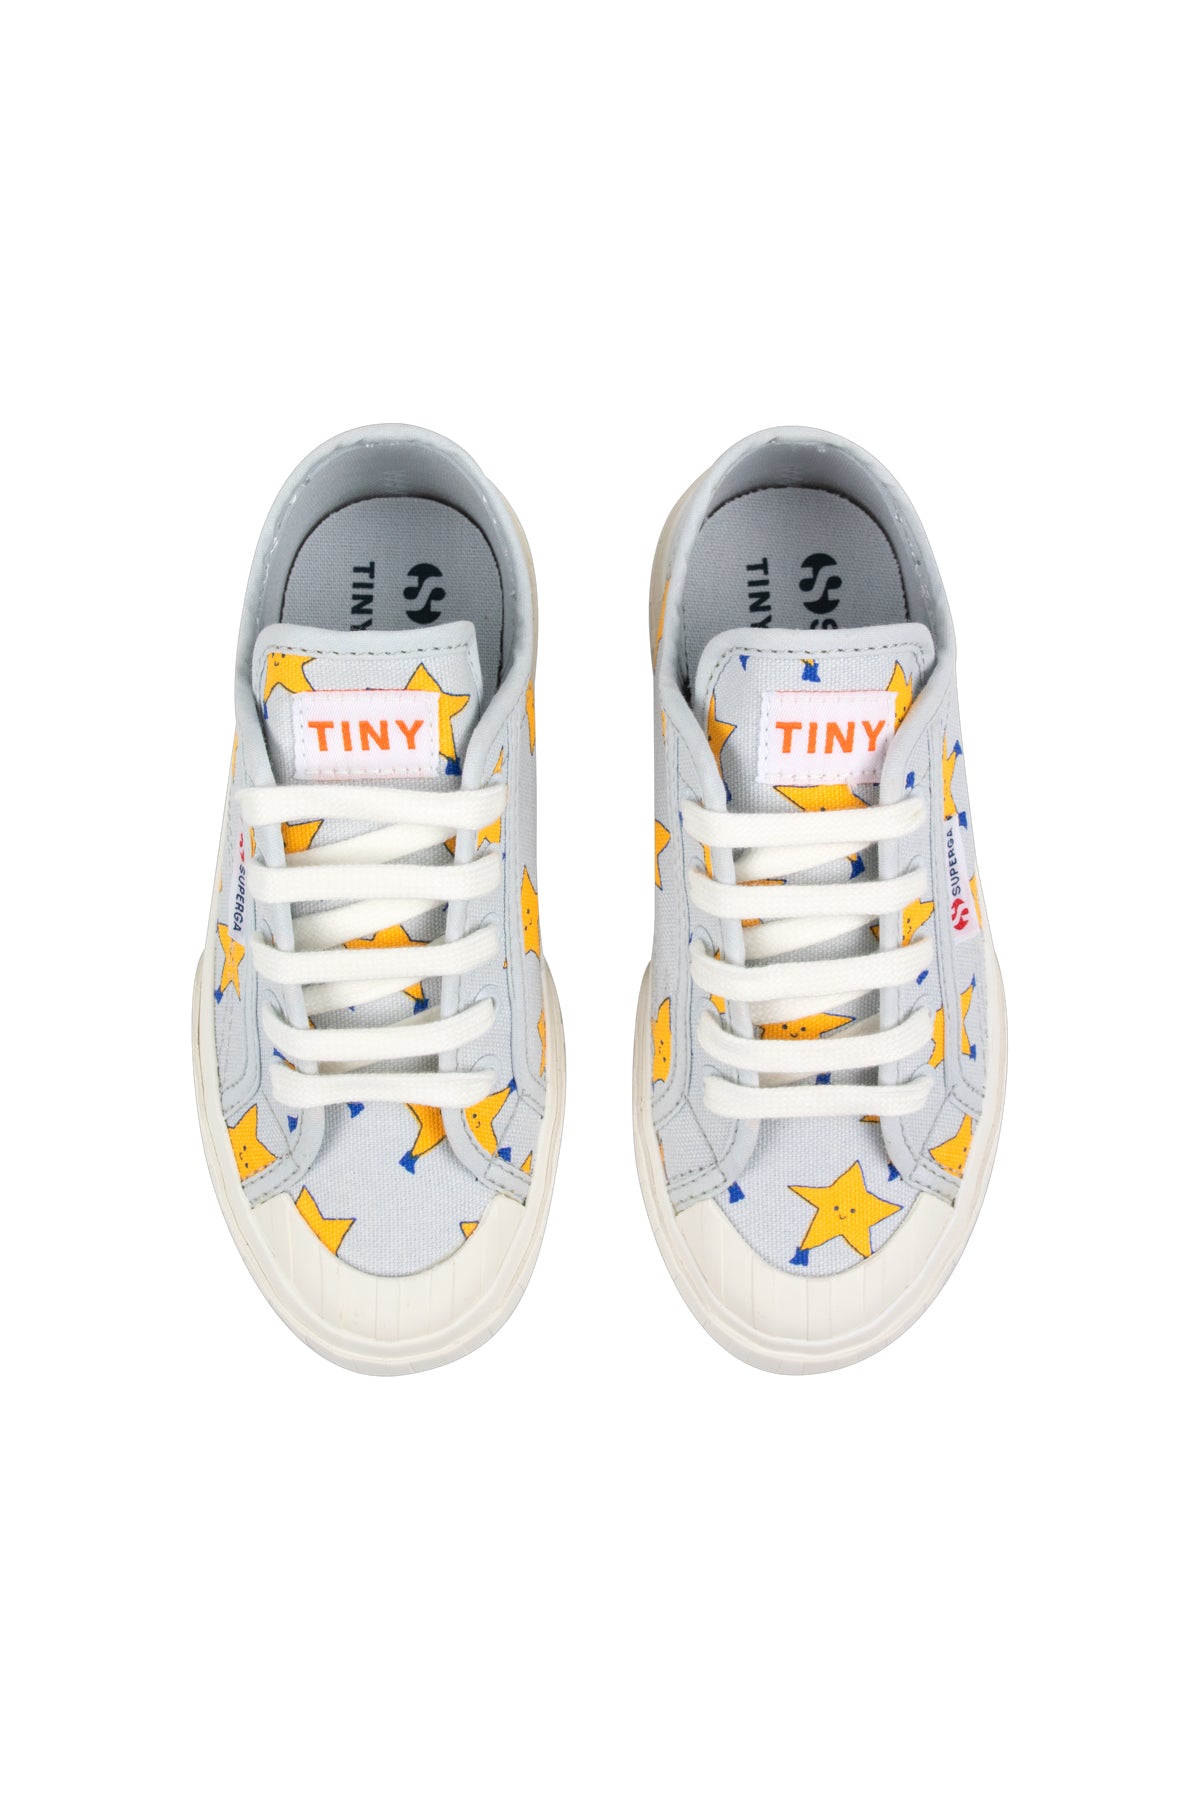 Tiny Cottons Tiny X Superga Dancing Stars Sneakers - Sky Grey